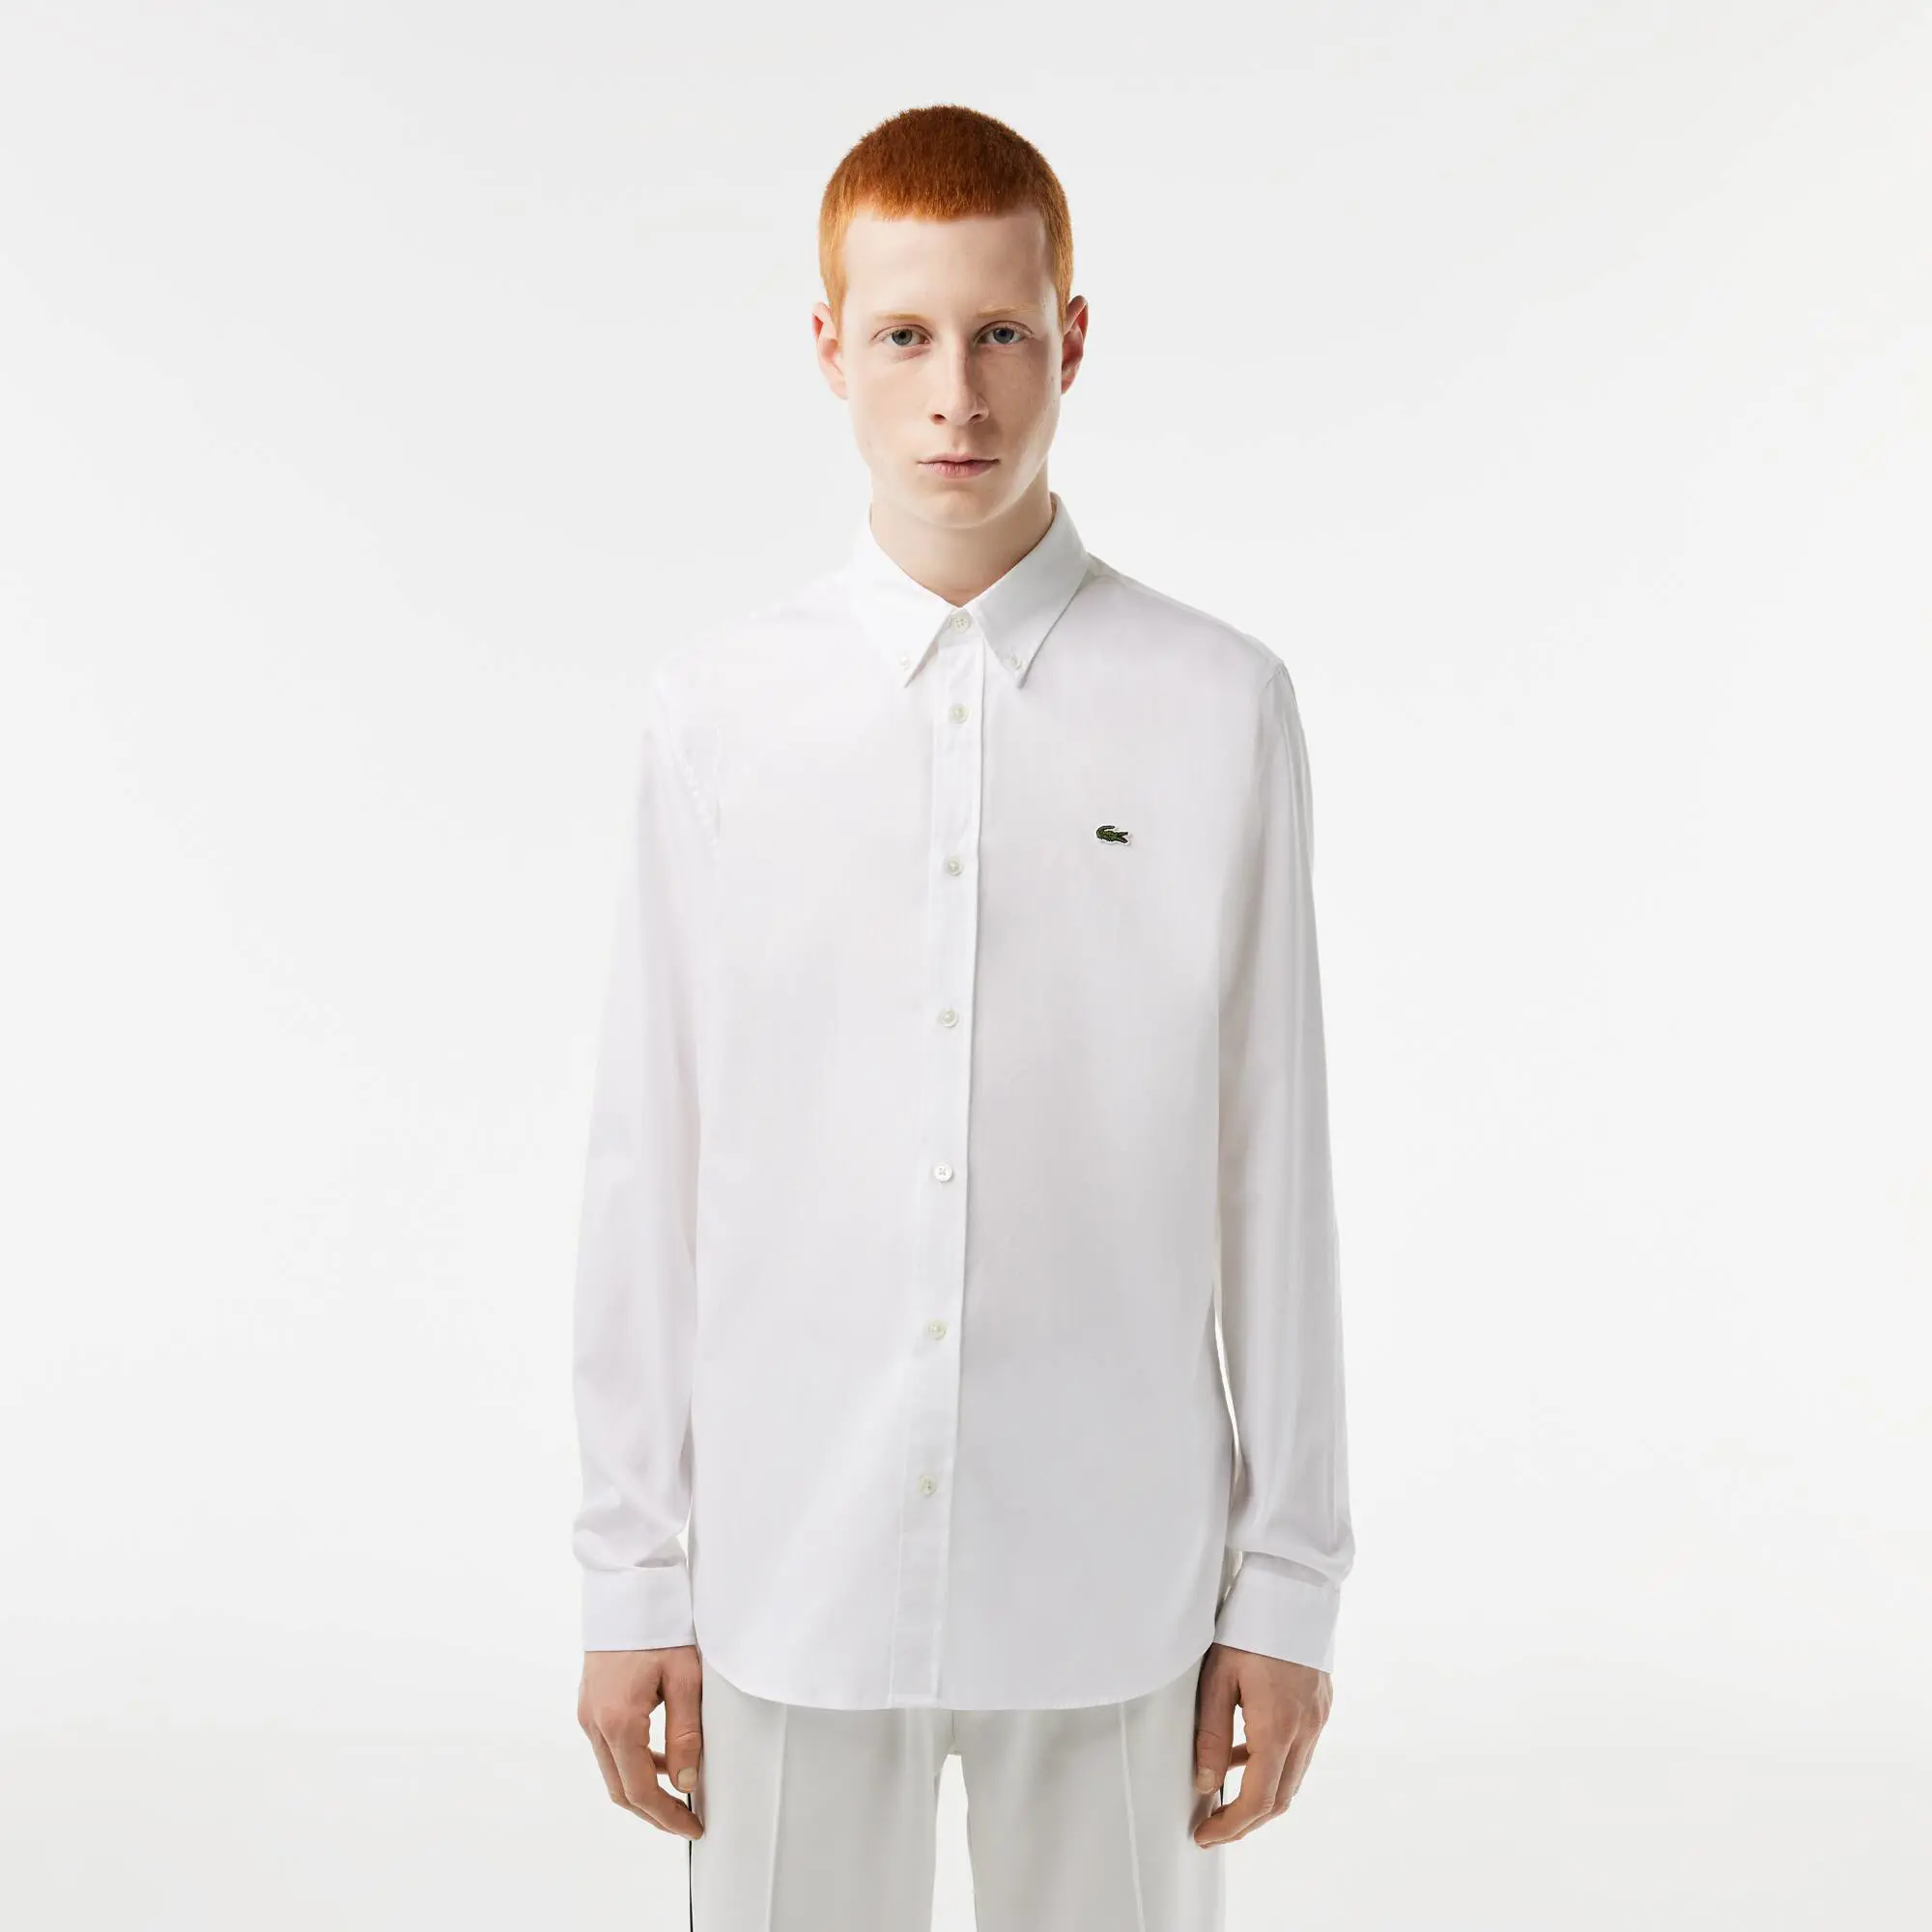 Lacoste Men’s Slim Fit Premium Cotton Shirt. 1